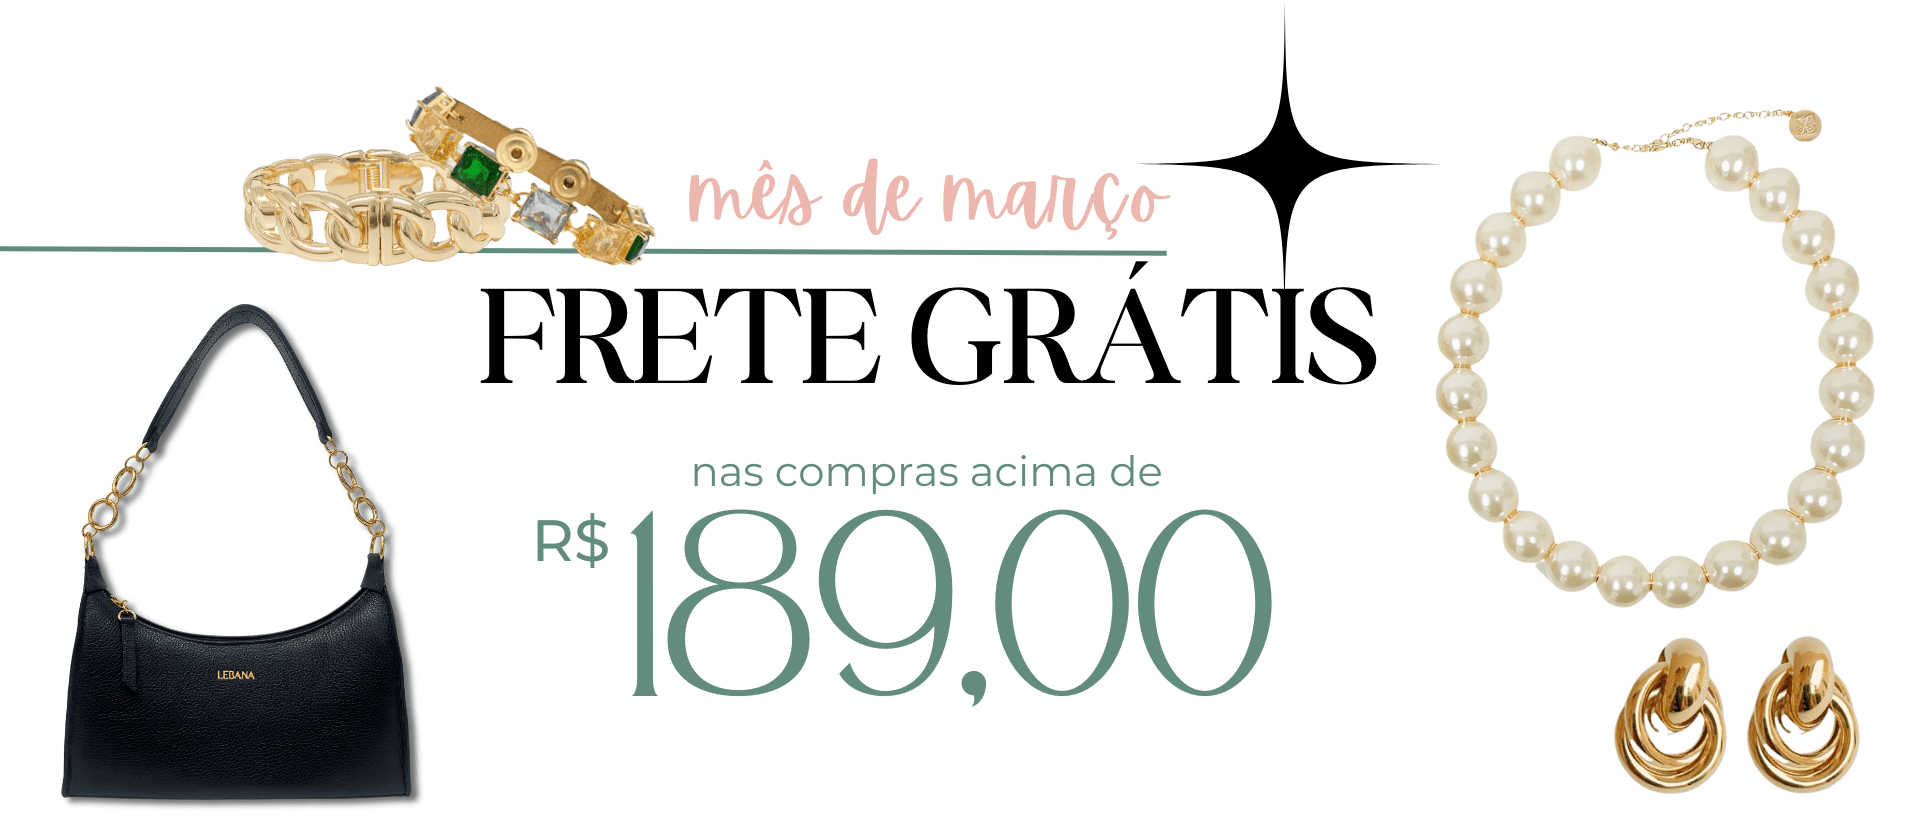 FRETE GRATIS COMPRAS ACIMA DE R$189,00